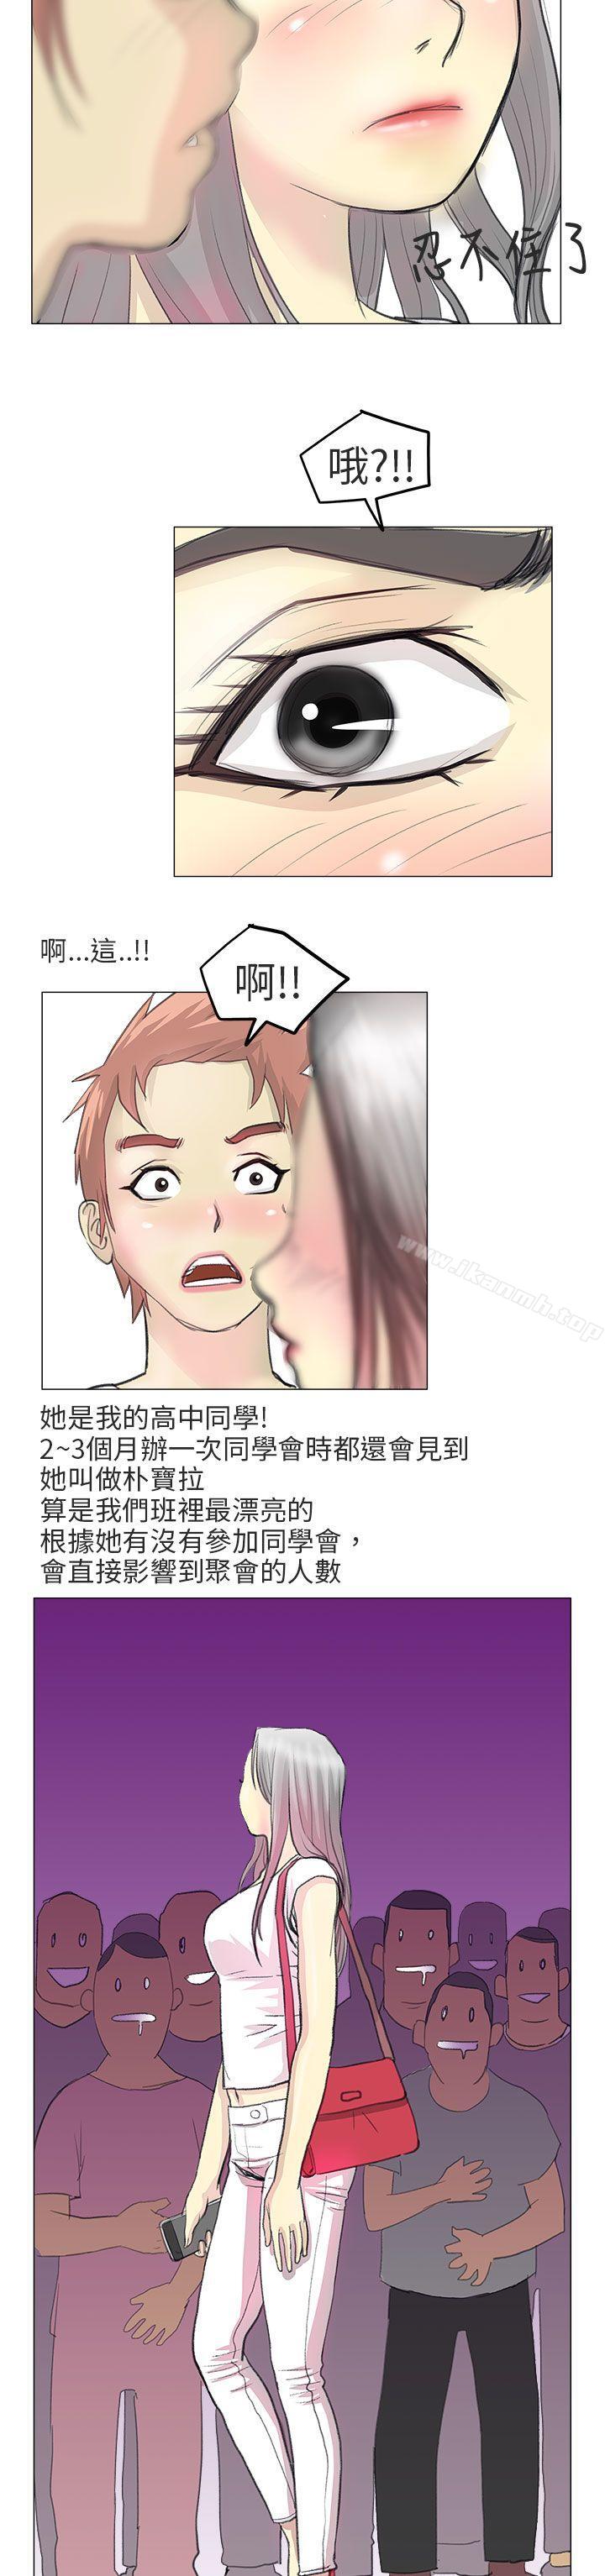 漫画韩国 秘密Story第二季   - 立即阅读 第二季 電車癡漢?(上)第15漫画图片